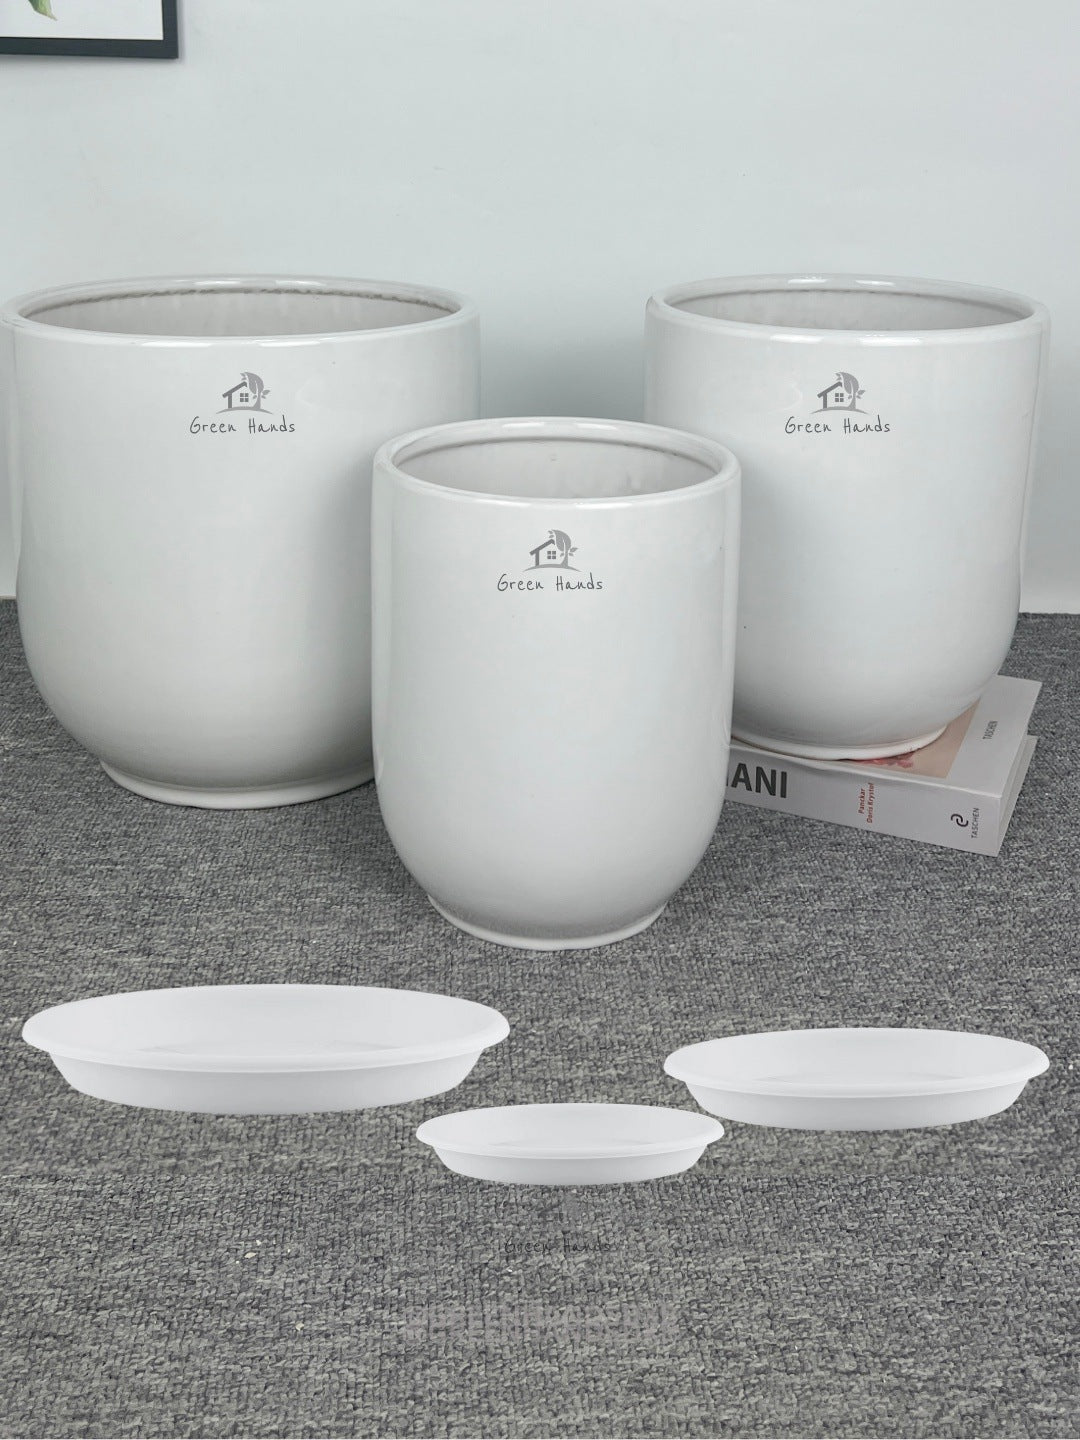 Best Value White Ceramic Pots in UAE